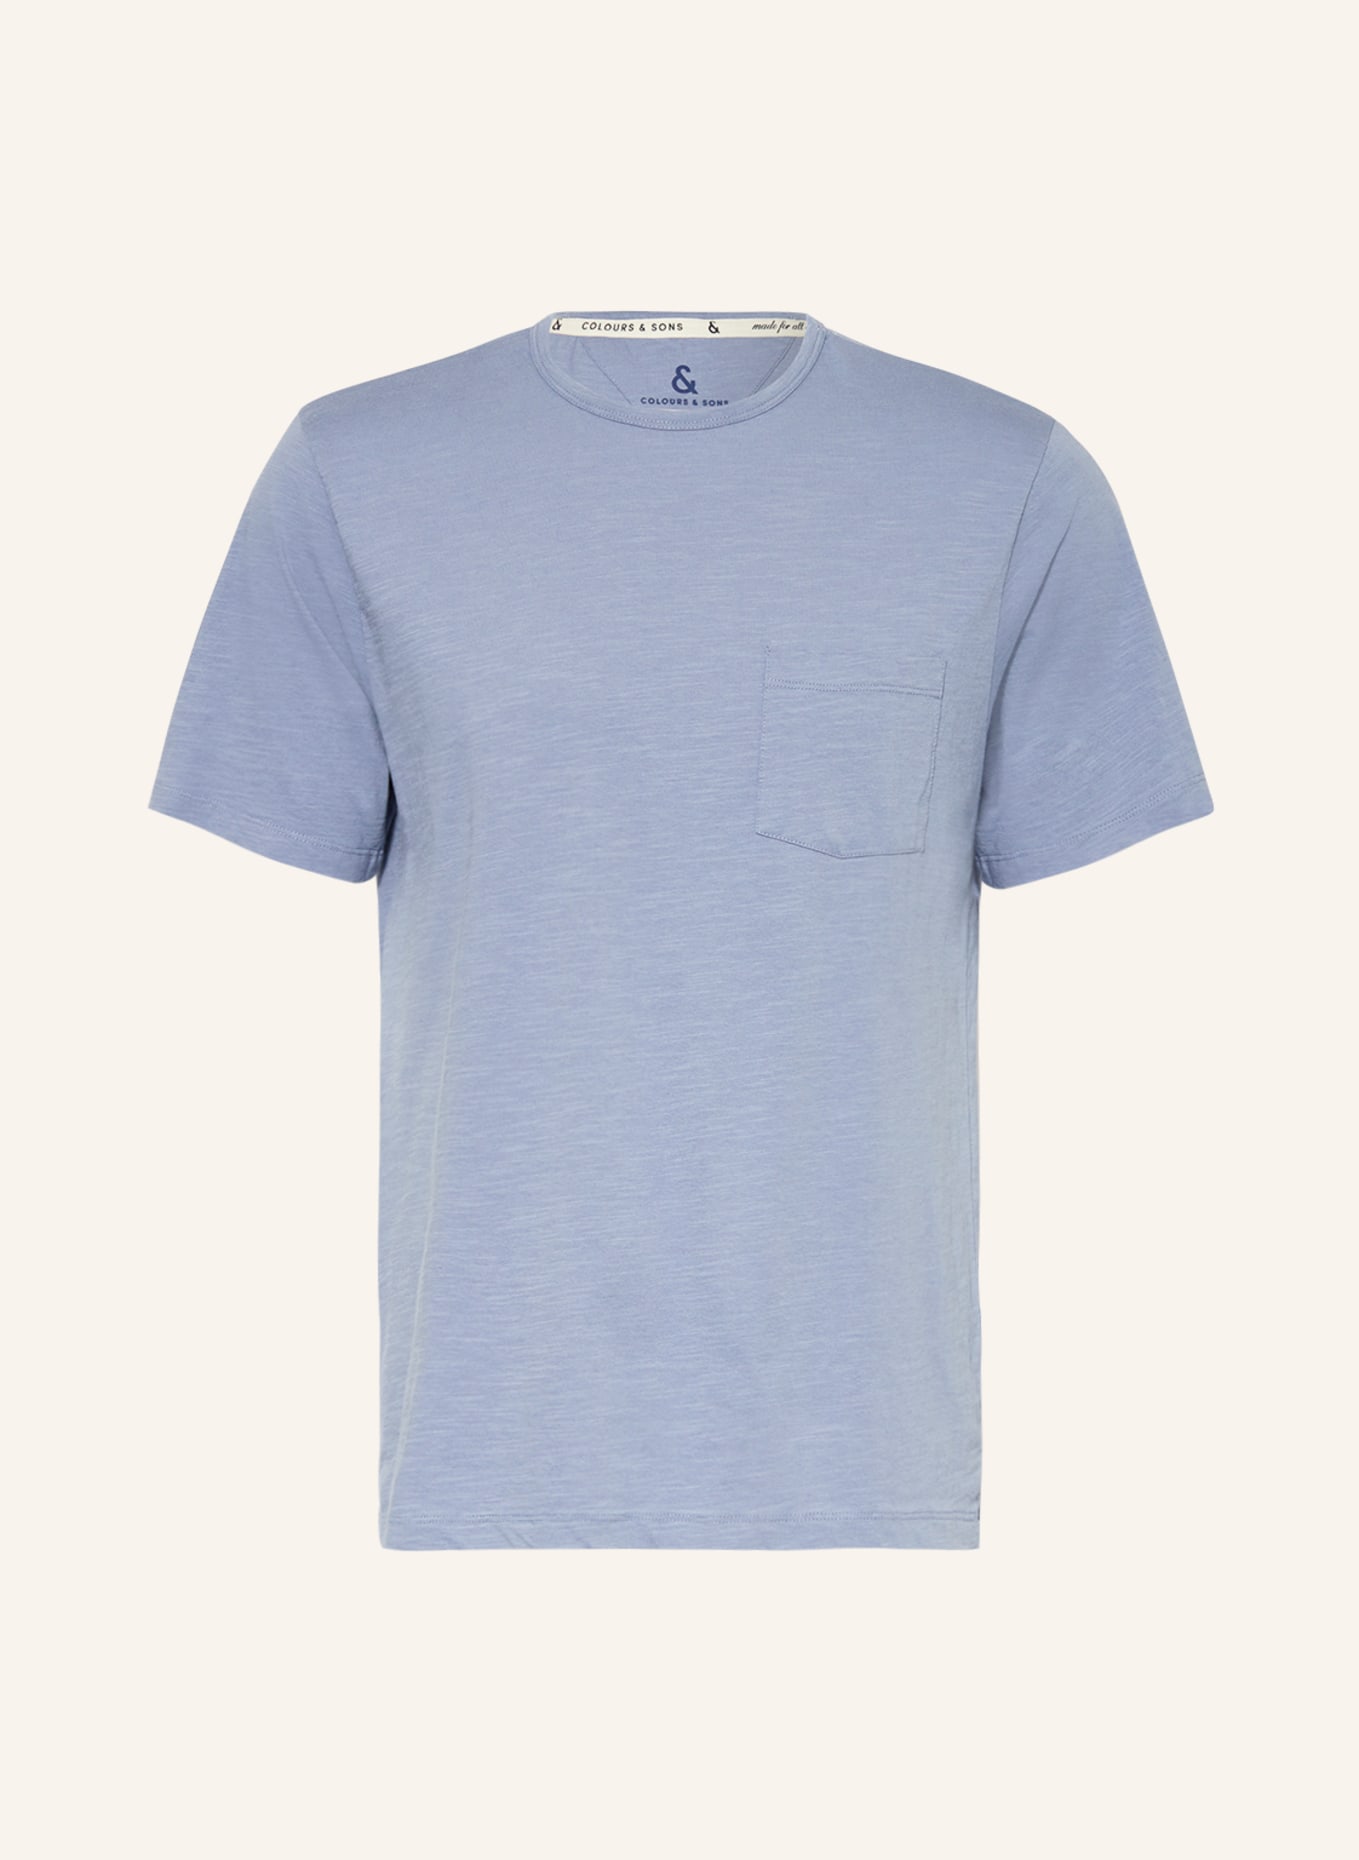 COLOURS & SONS T-shirt, Color: BLUE GRAY (Image 1)